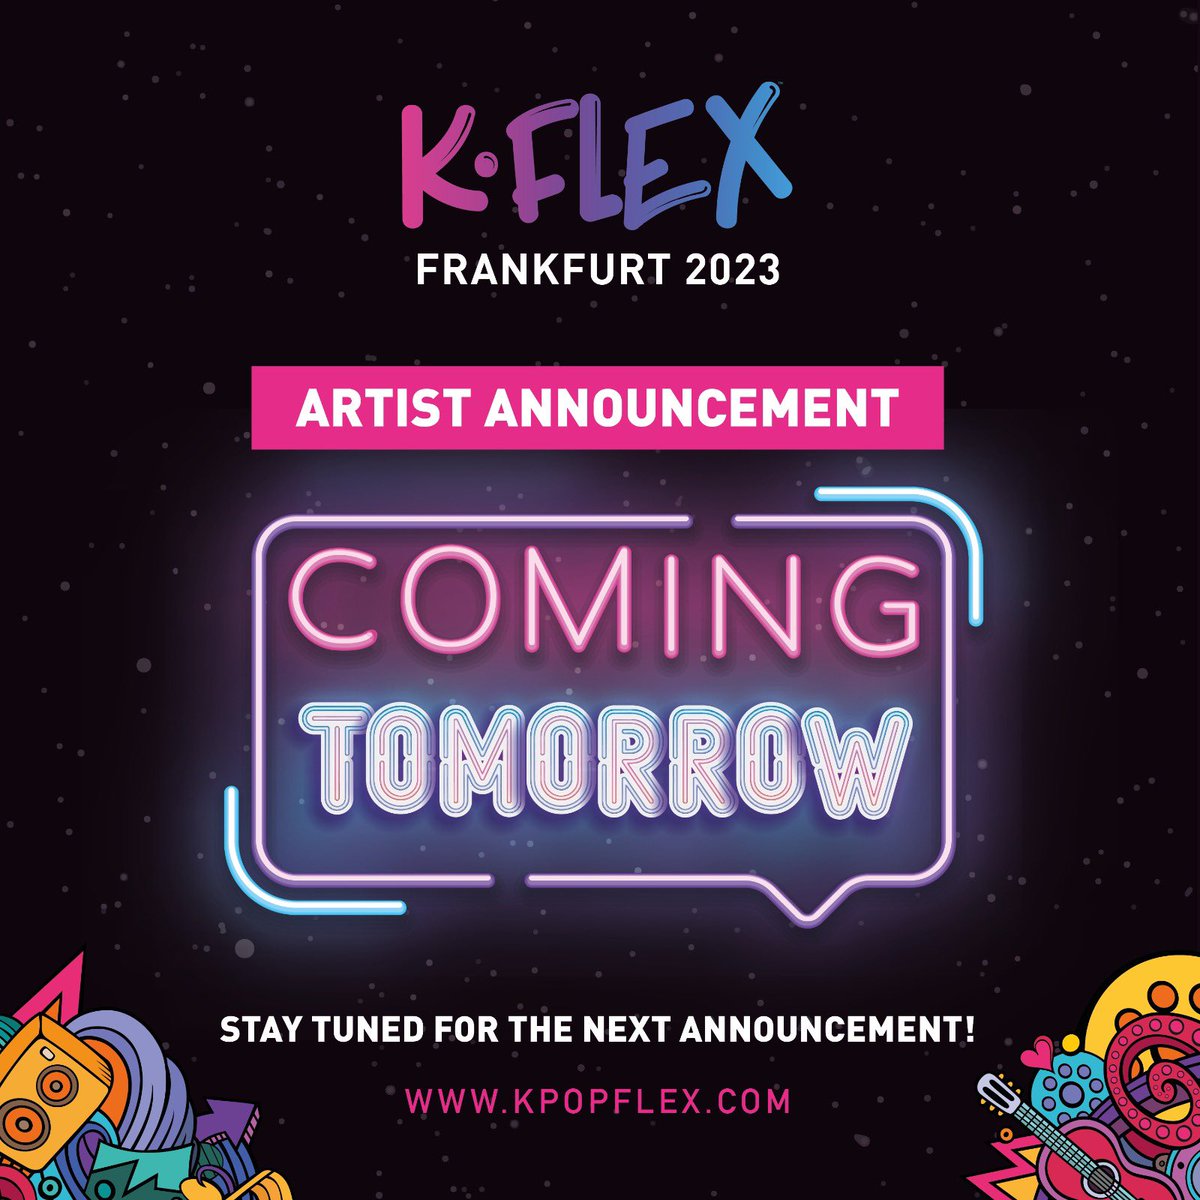 The wait is over! We will reveal our next artist tomorrow 🎉

@K_FLEX_ 

#KFLEXFrankfurt #KFLEX #Frankfurt #kpop #frankfurt #kpopnews #Announcement #kpopfan #kpopl4l #kpoplife #kpopper